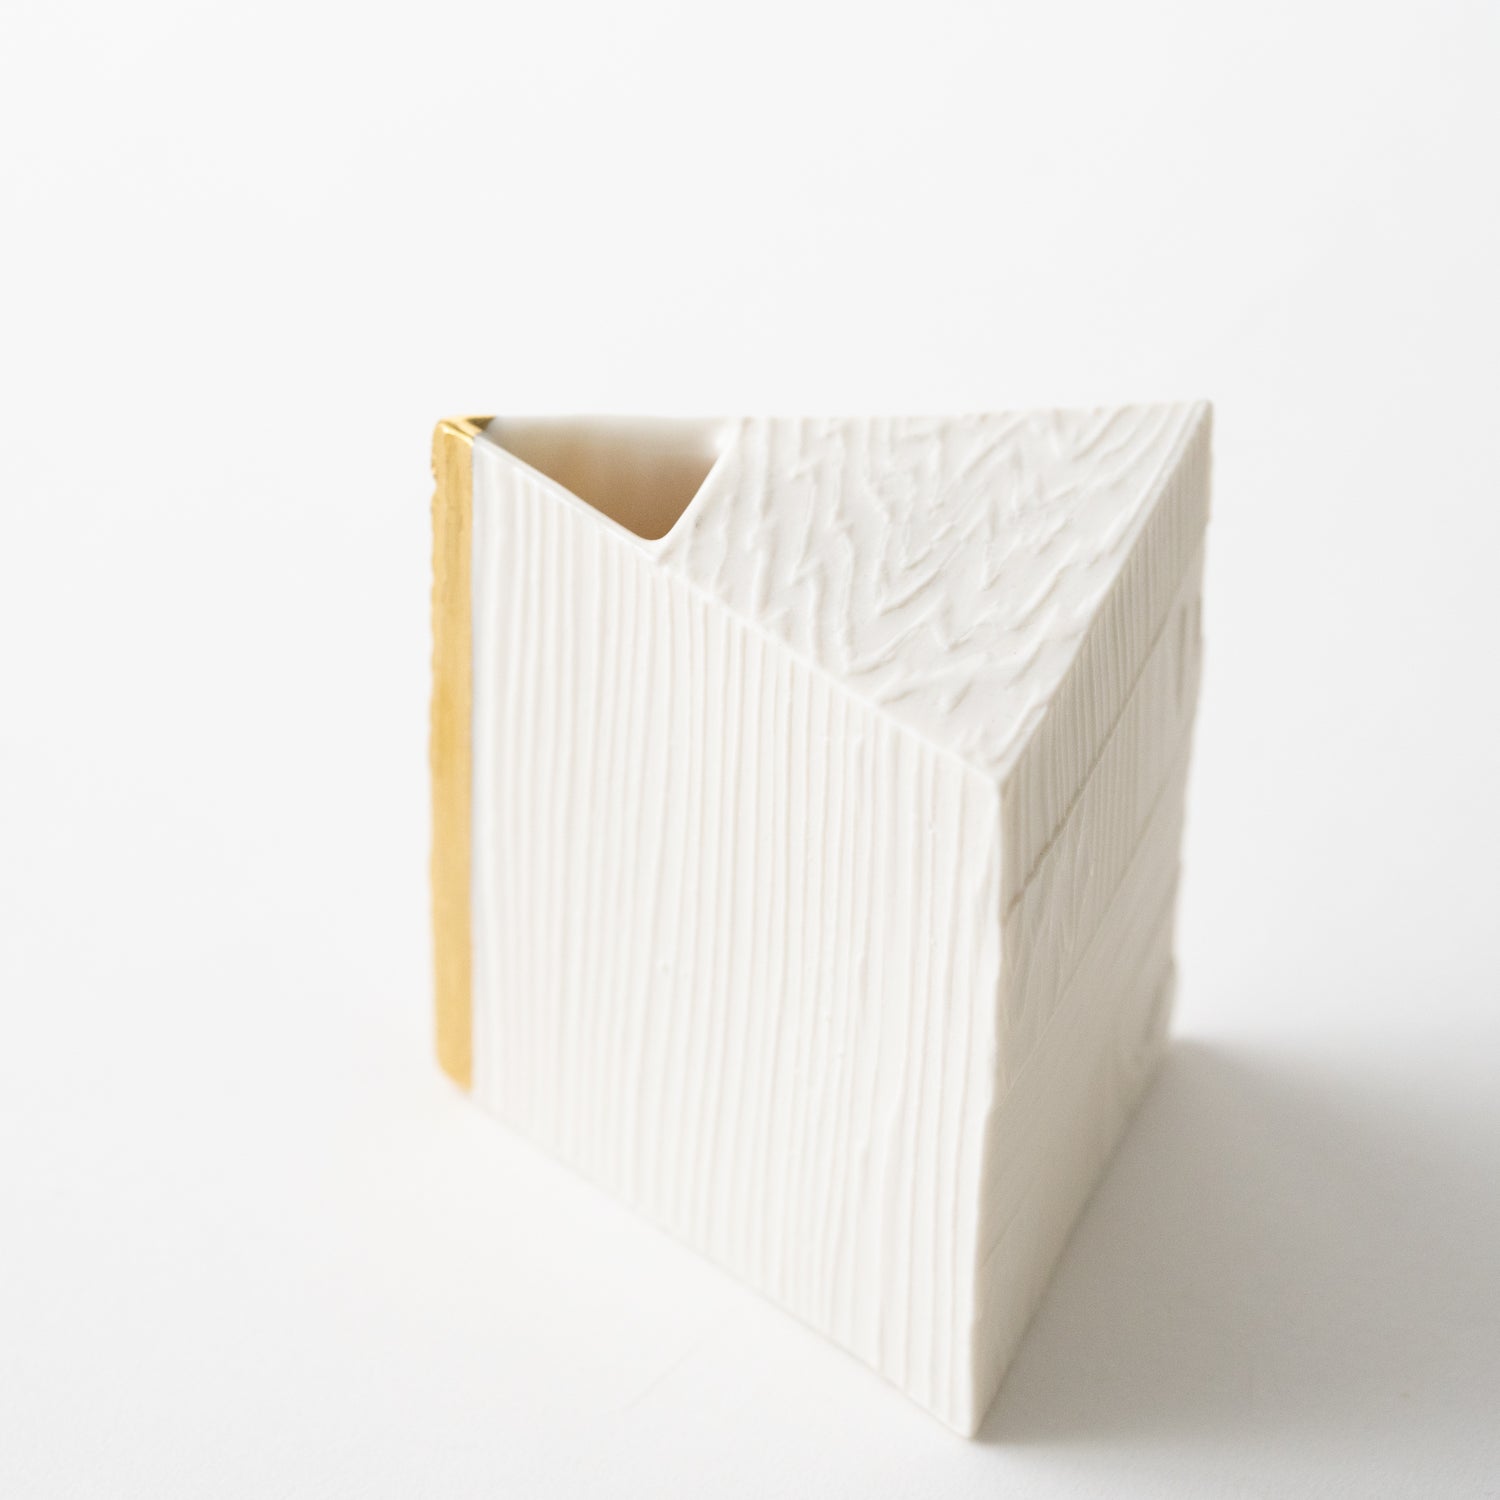 Triangular Wood Grain Vase (Gold) / Ryosuke Ando